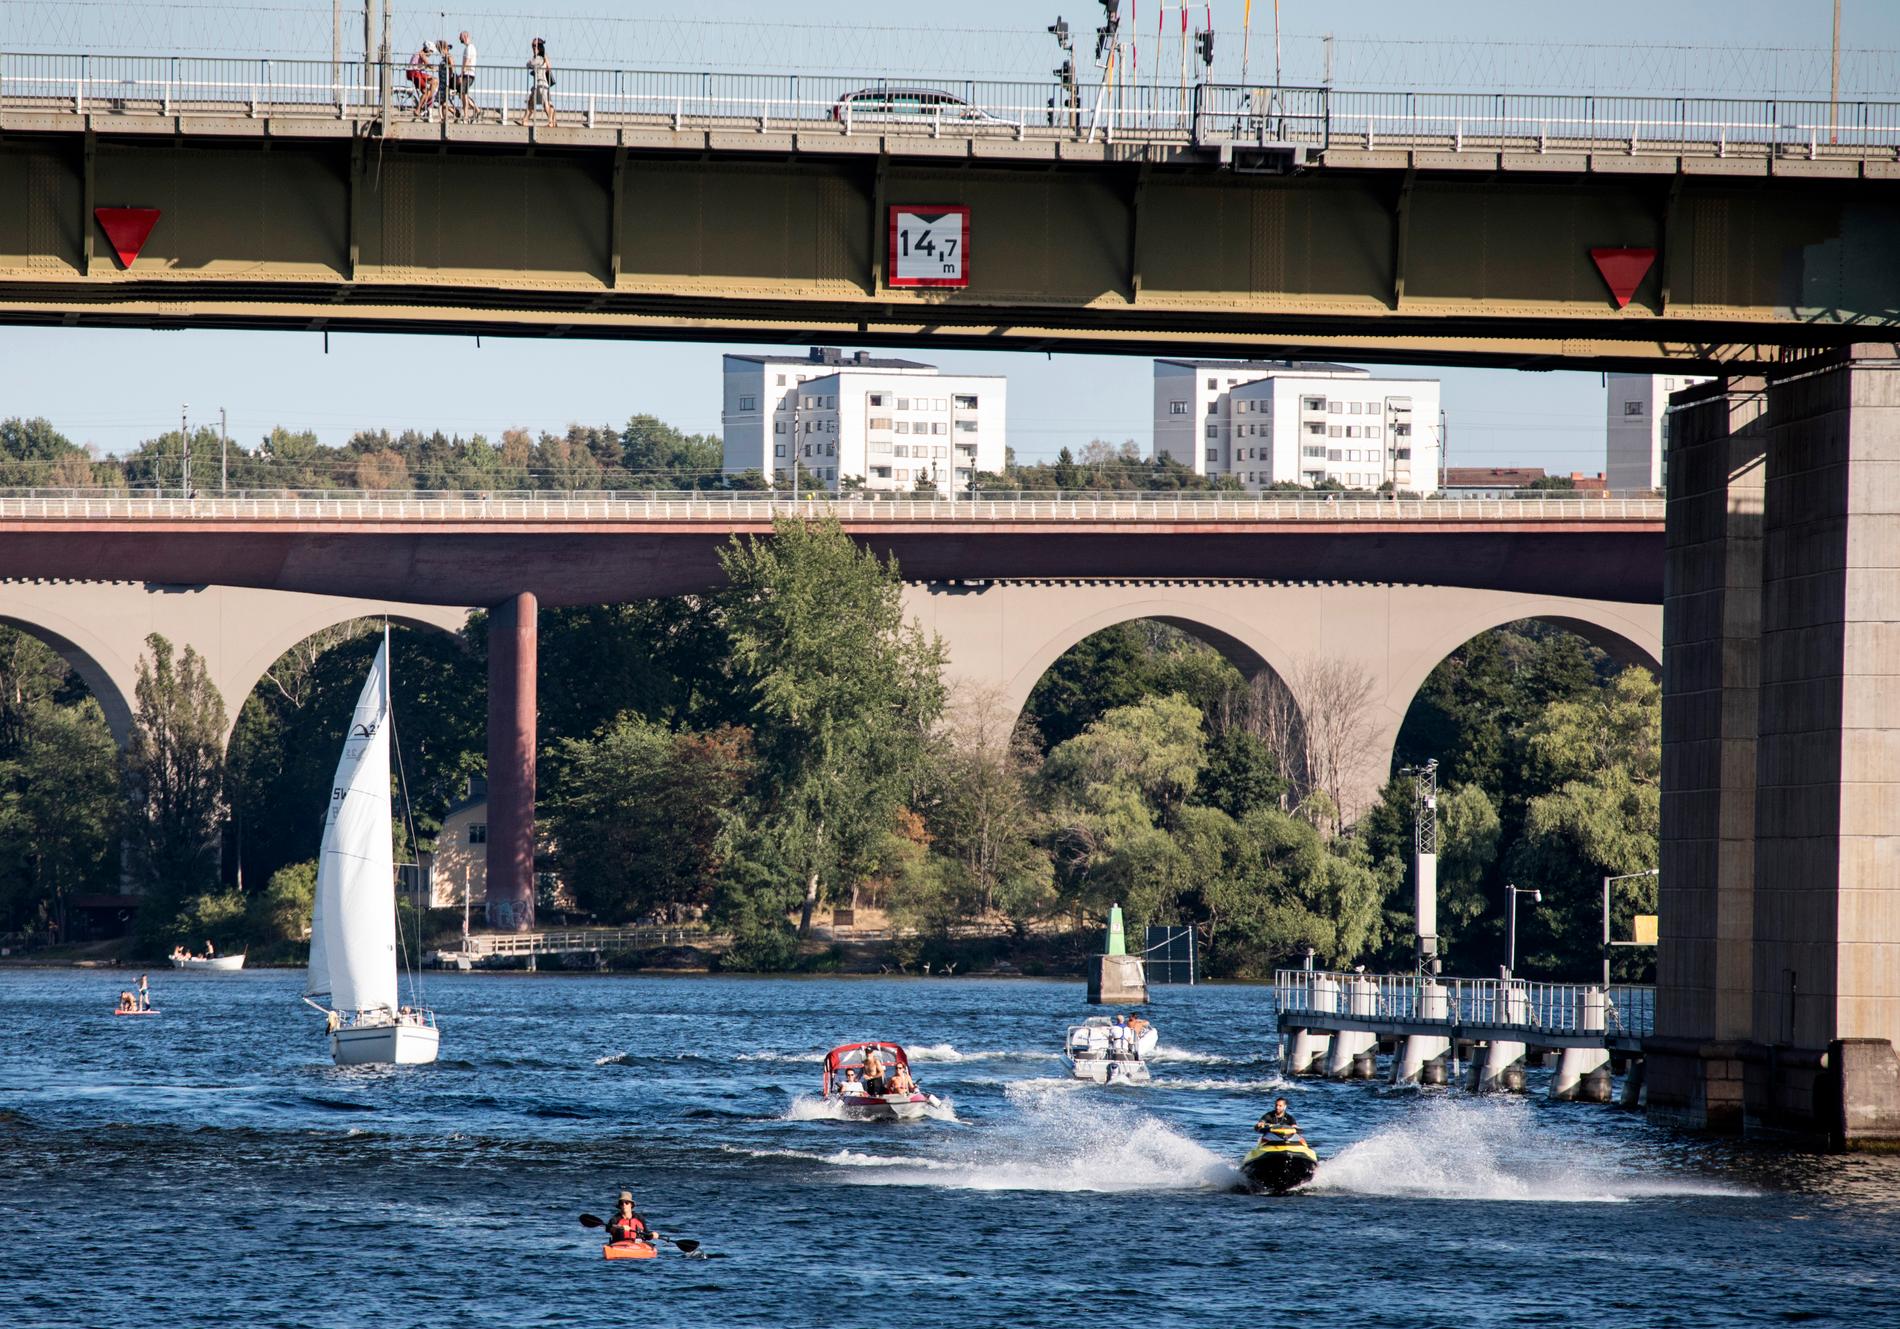 Svalka fanns att finna på sjön denna rekordvarma sommar, här under Liljeholmsbron i Stockholm.